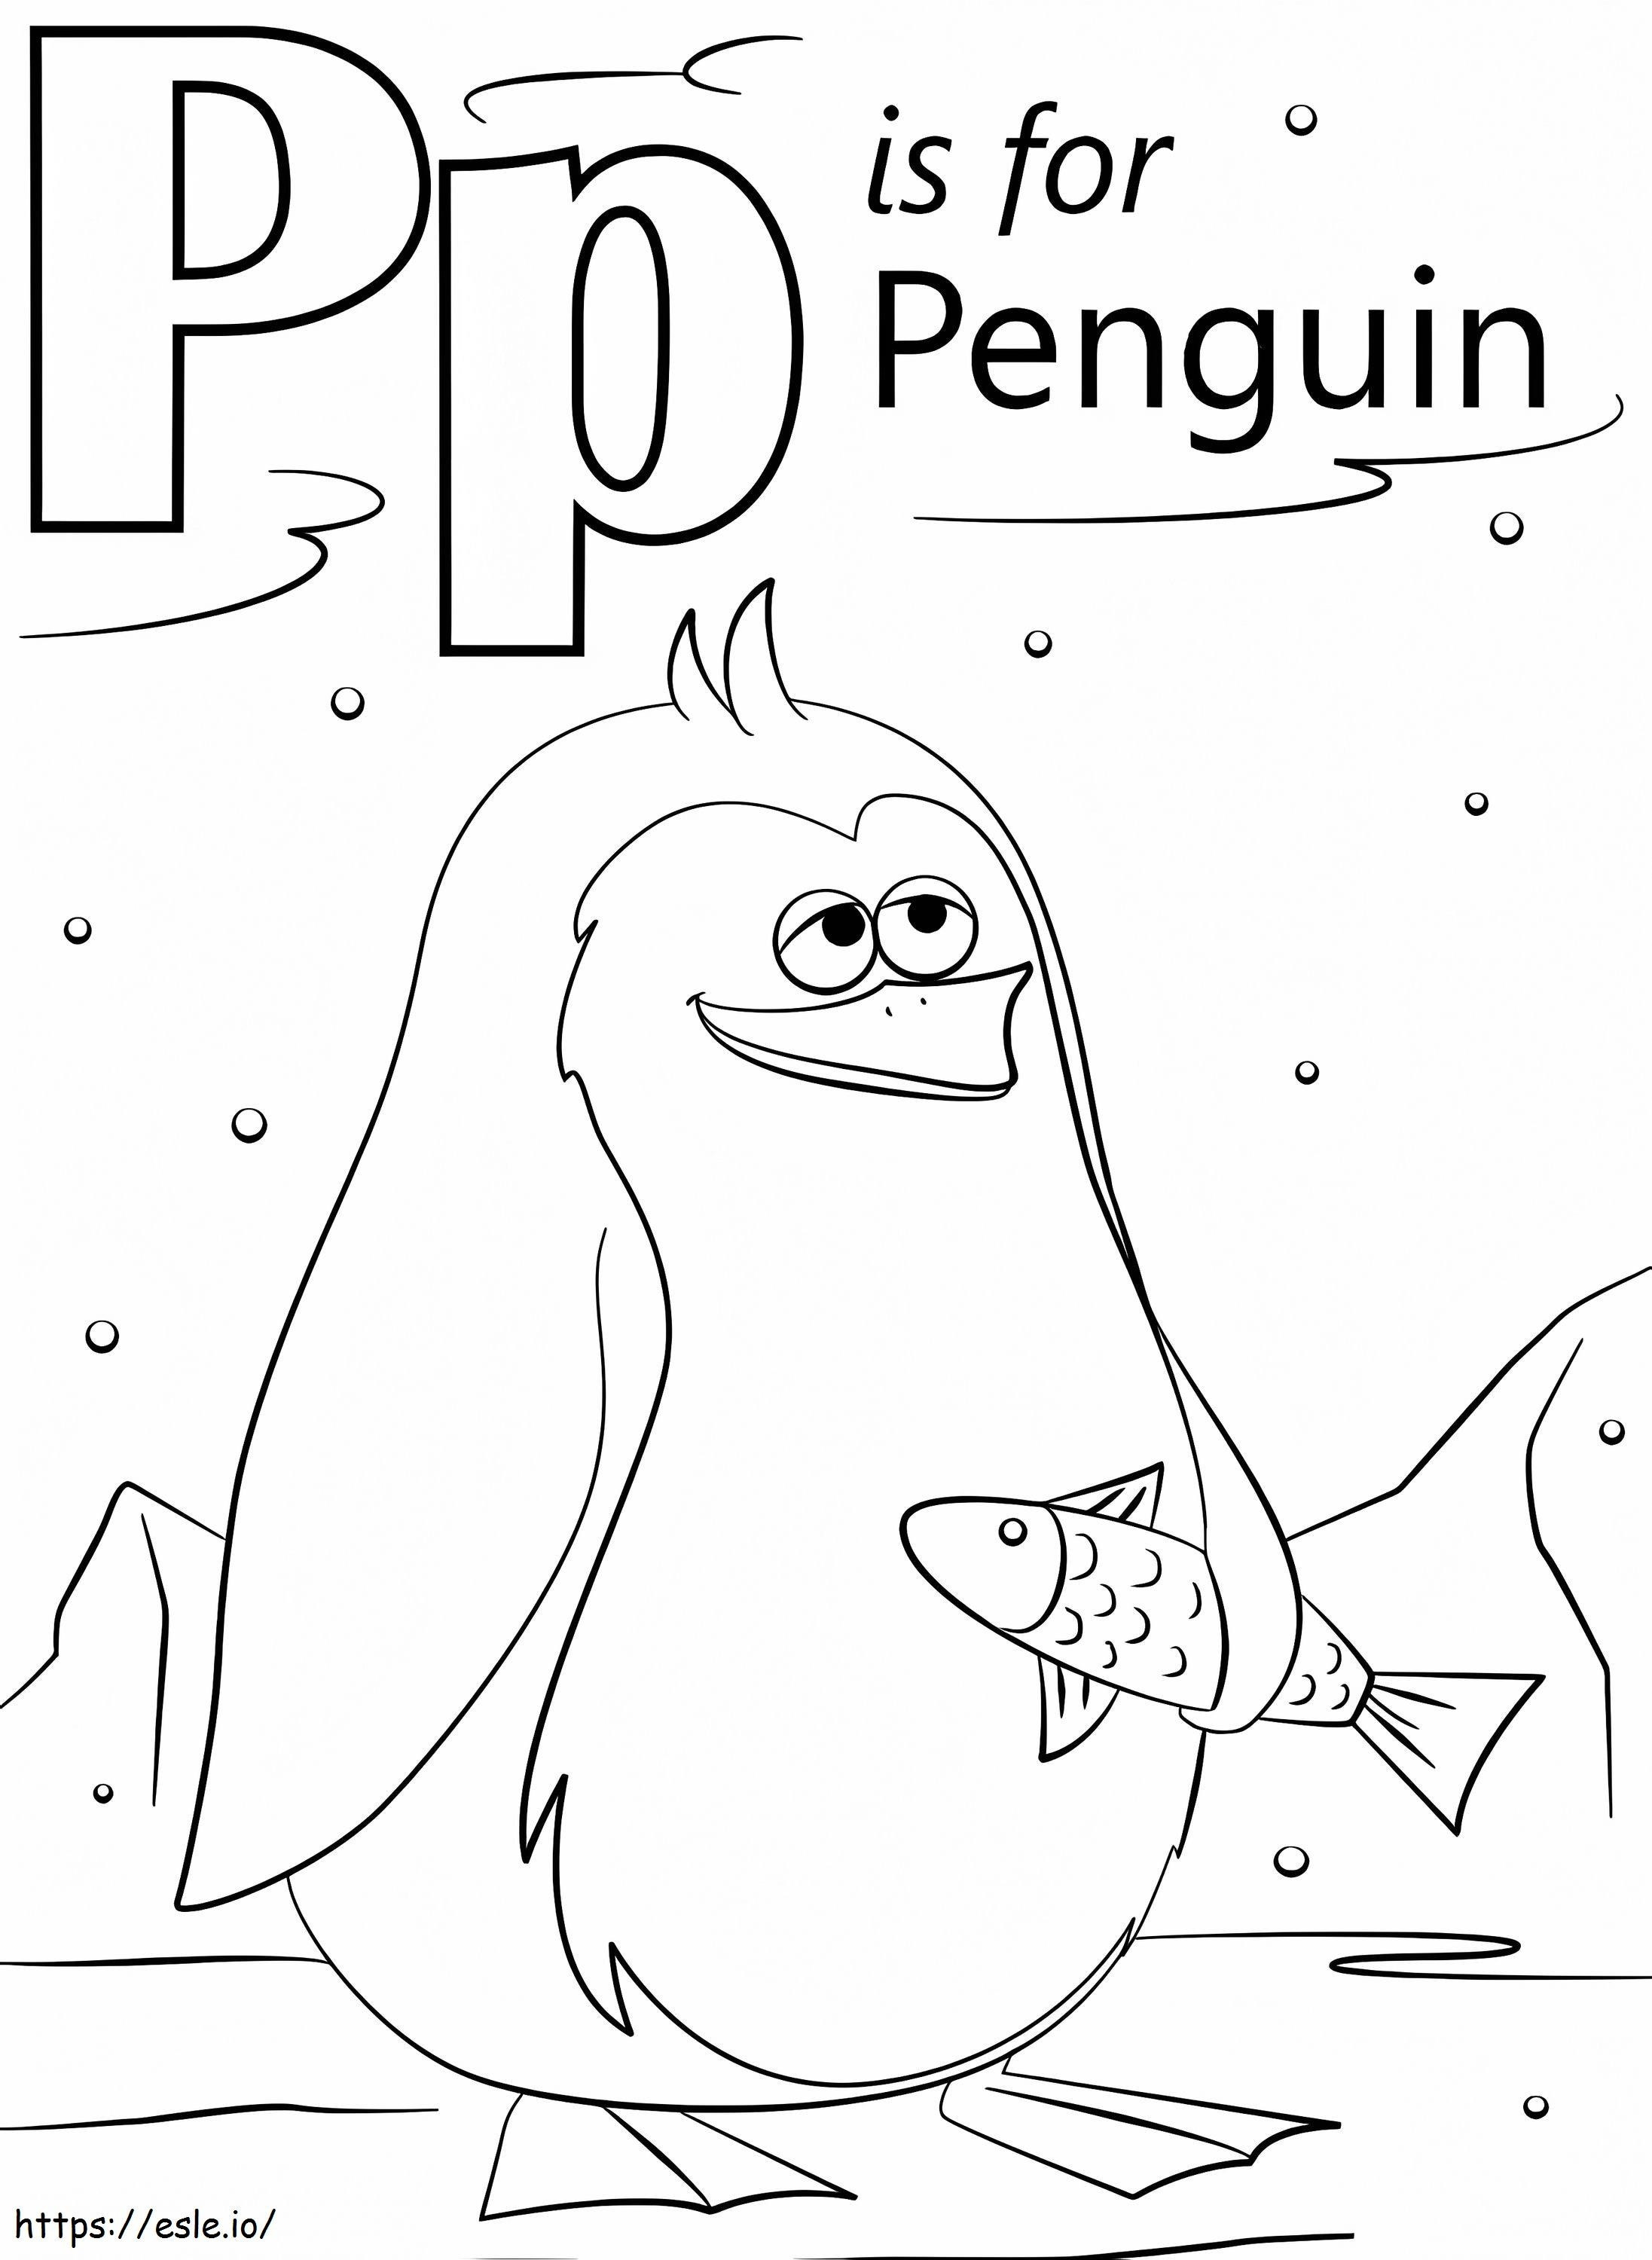 Pingwin Litera P kolorowanka